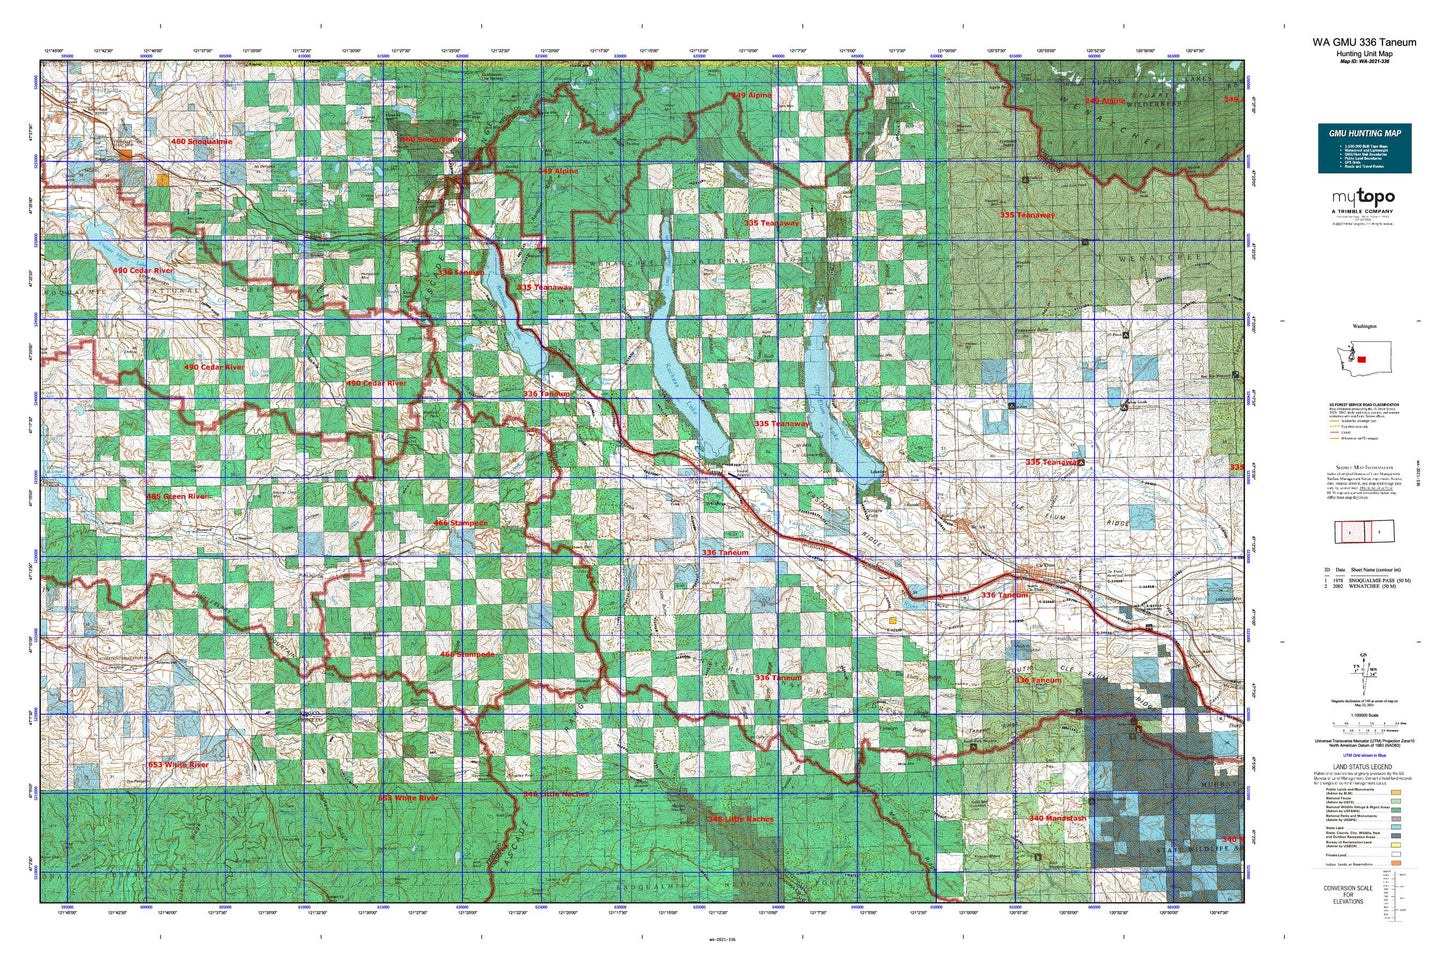 Washington GMU 336 Taneum Map Image